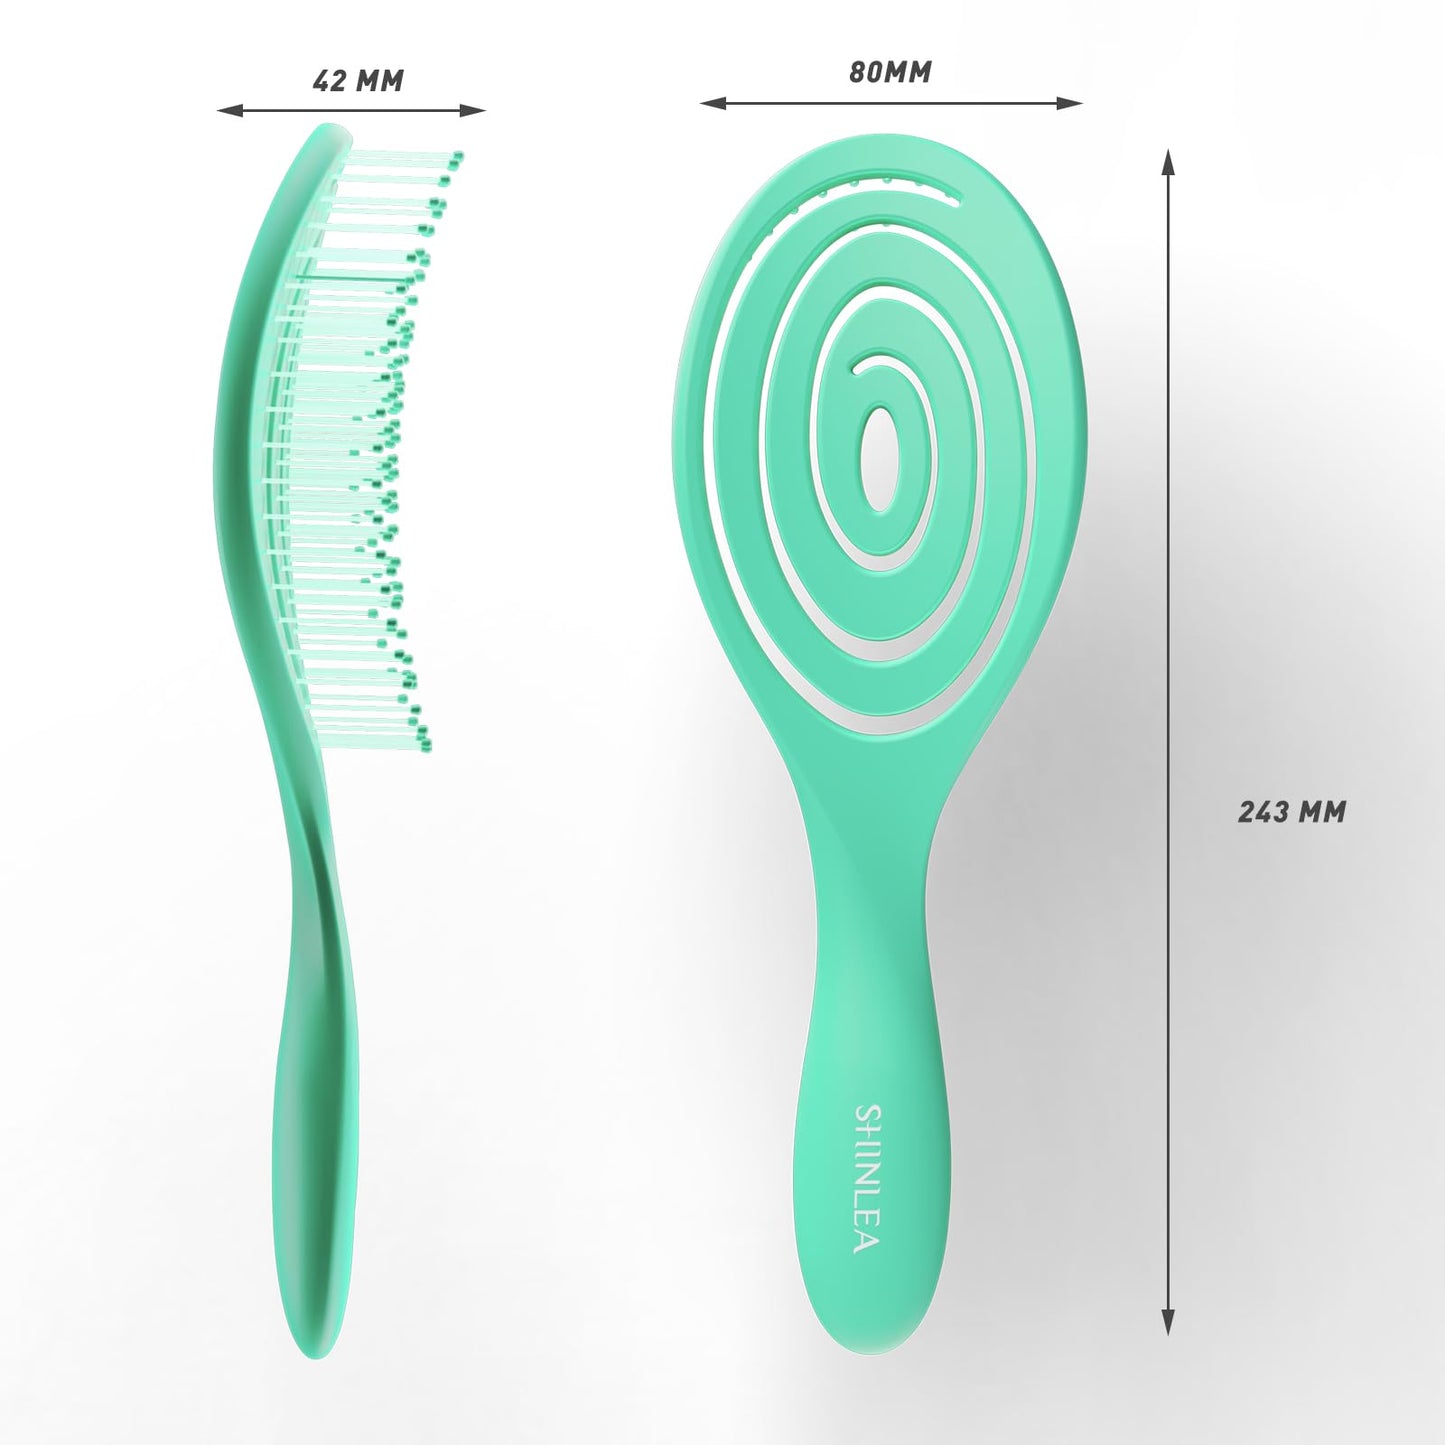 SHINLEA Detangle Hair Brush Anti Tangle Hair Brush, Detangling Wet & Dry Hair Brush Spiral Hairbrush for Women, Men, Kids, Glide Through Tangles For All Hair Types (Green)